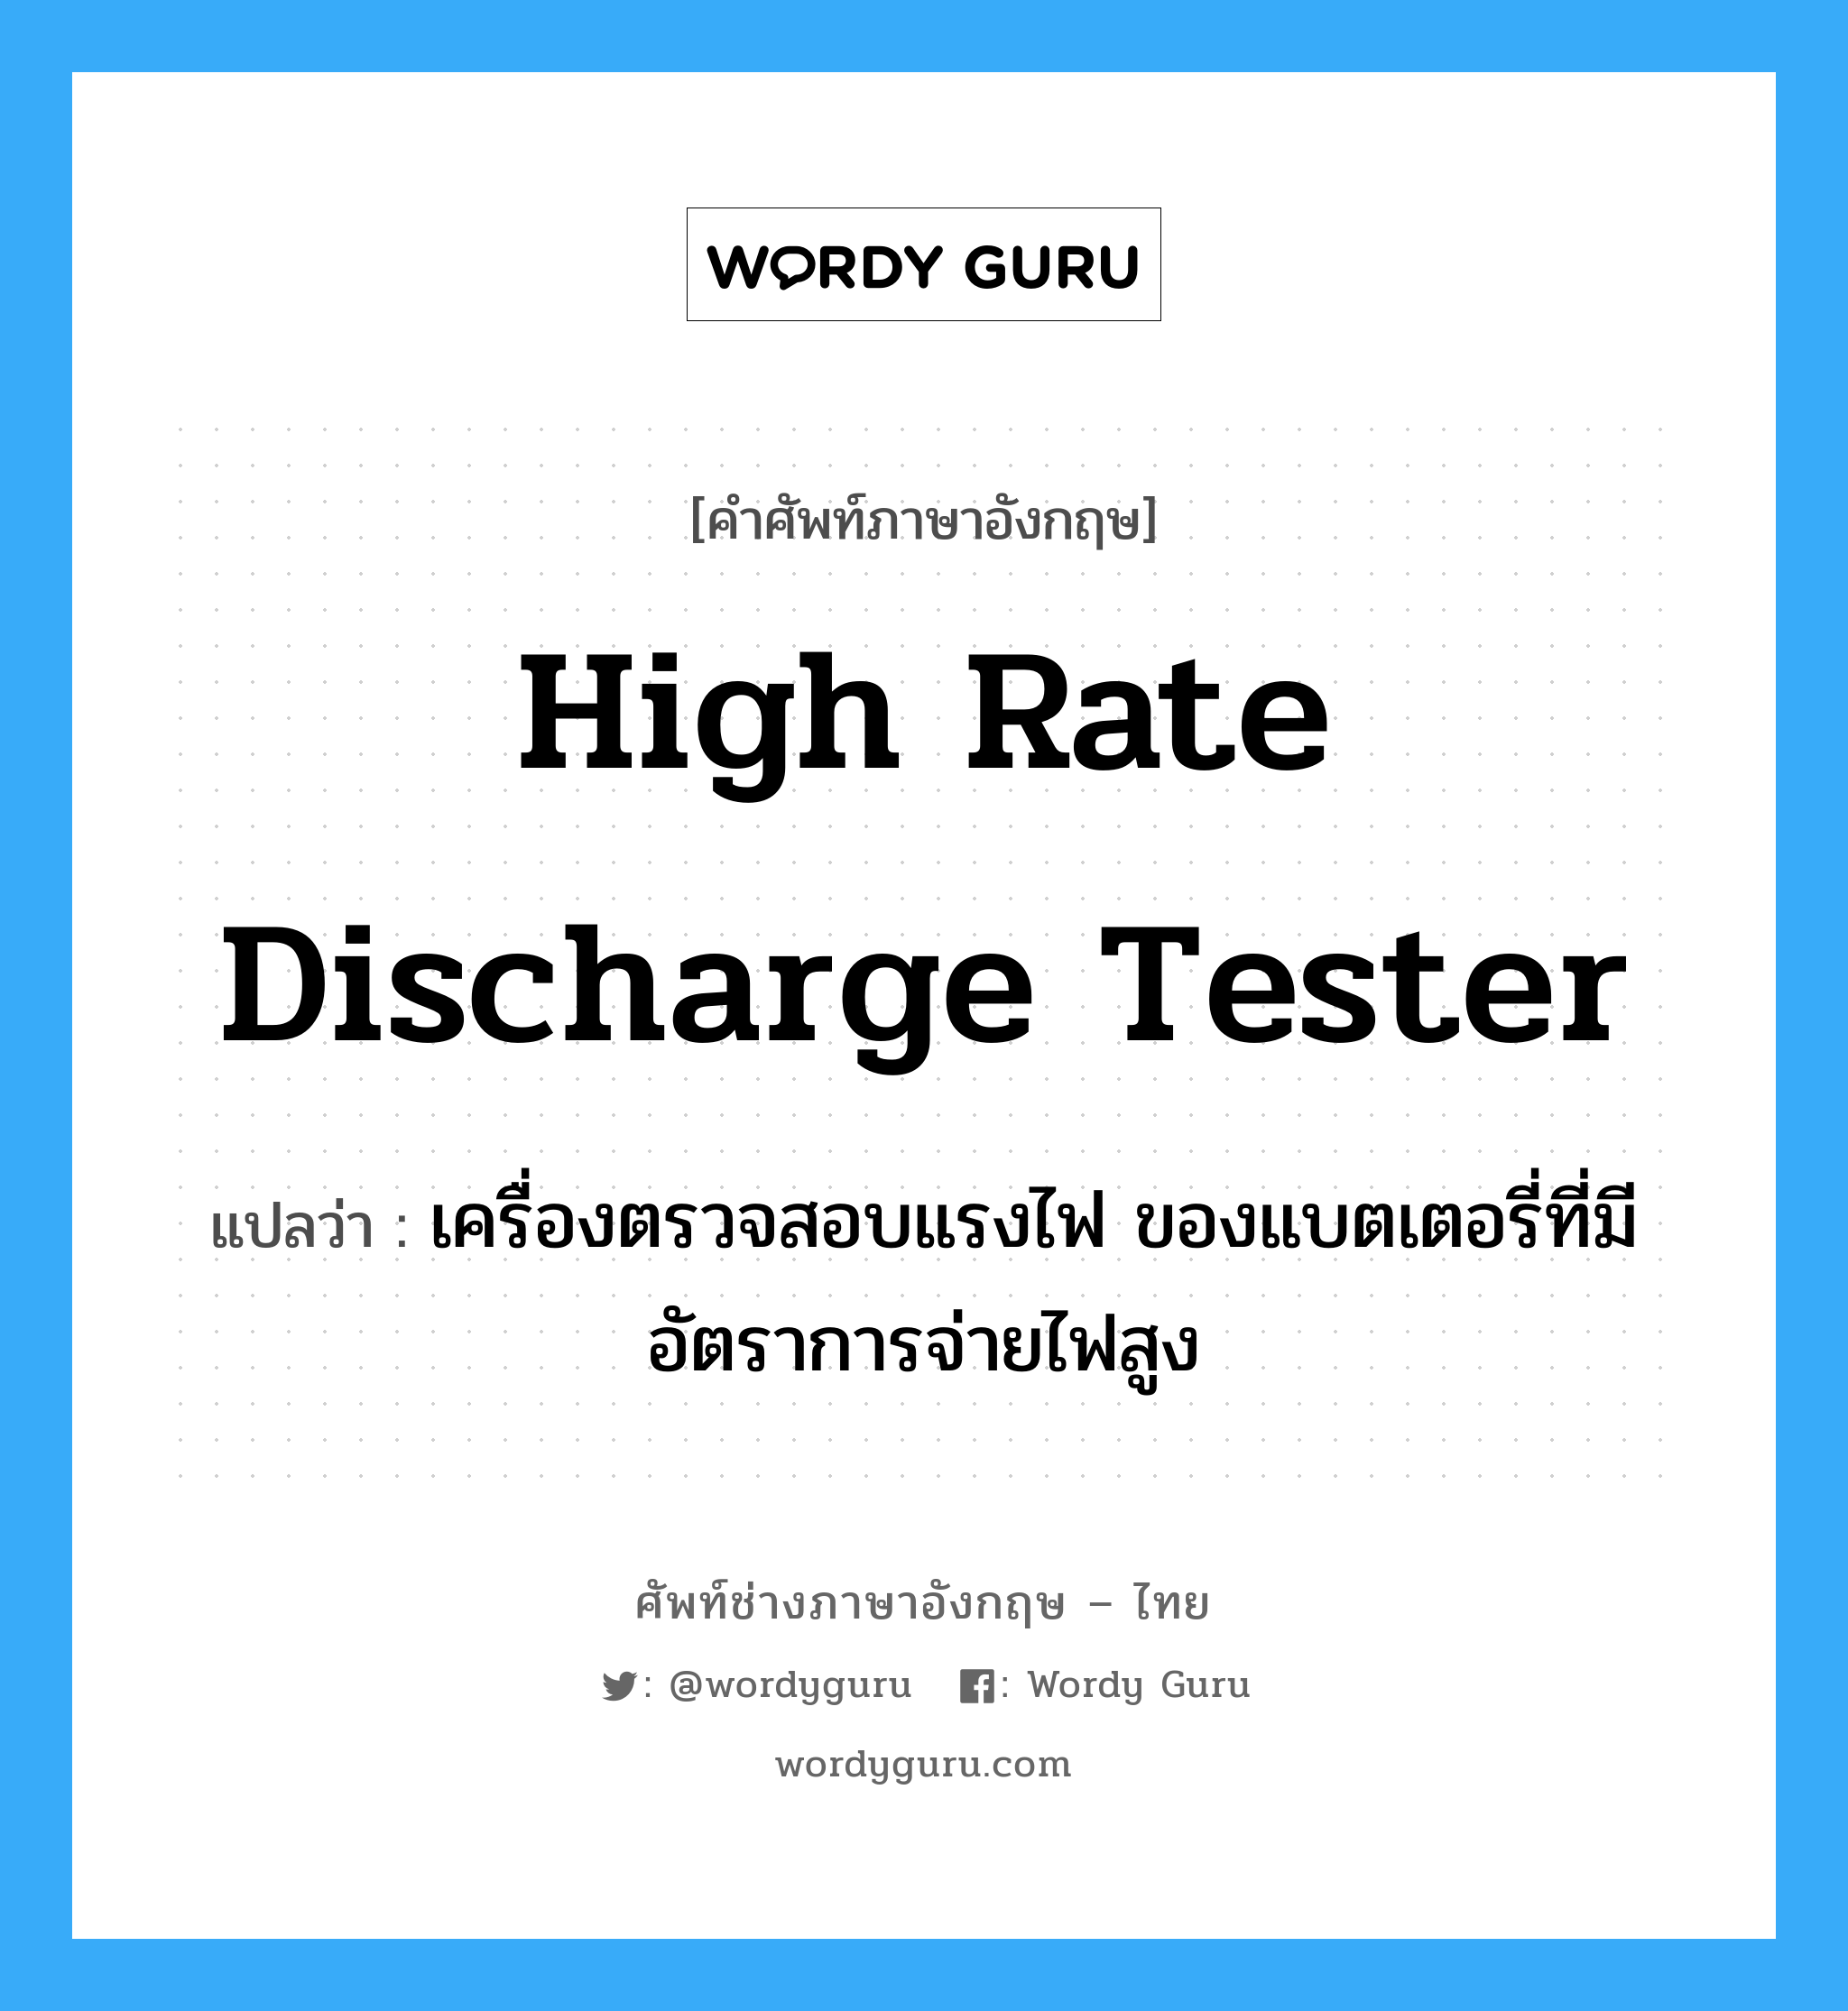 high rate discharge tester แปลว่า?, คำศัพท์ช่างภาษาอังกฤษ - ไทย high rate discharge tester คำศัพท์ภาษาอังกฤษ high rate discharge tester แปลว่า เครื่องตรวจสอบแรงไฟ ของแบตเตอรี่ที่มีอัตราการจ่ายไฟสูง